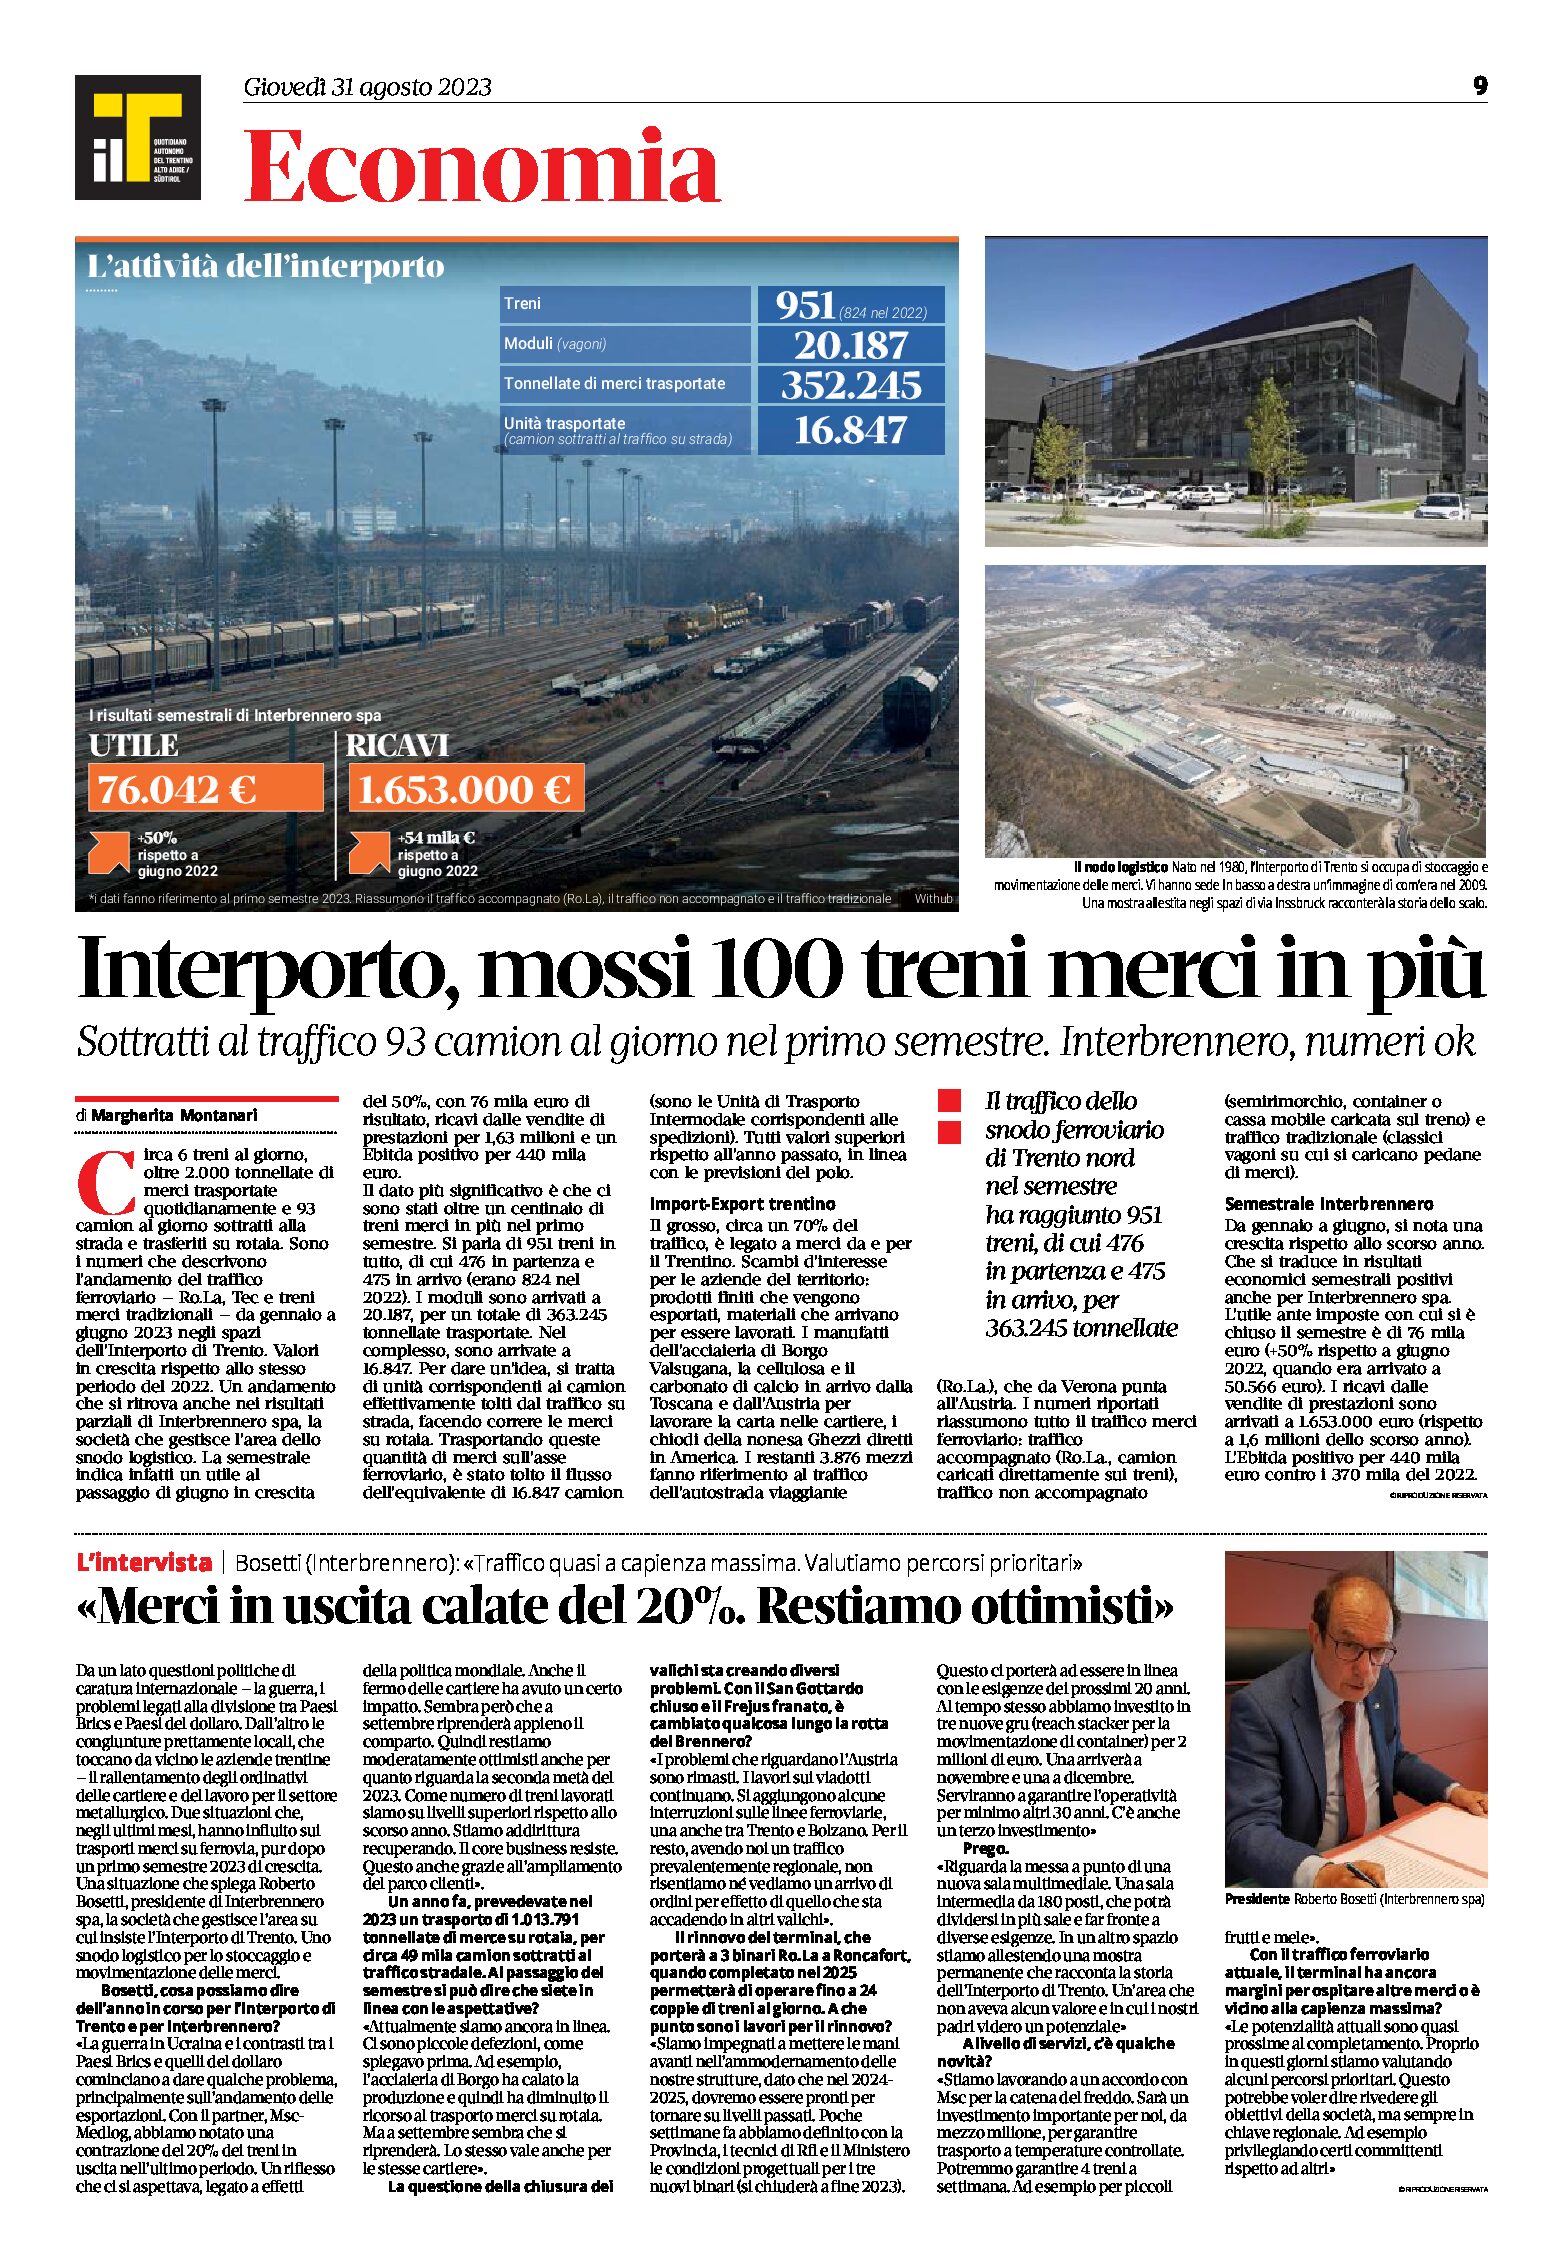 Trento, interporto: mossi 100 treni merci in più, sottratti al traffico 93 camion al giorno